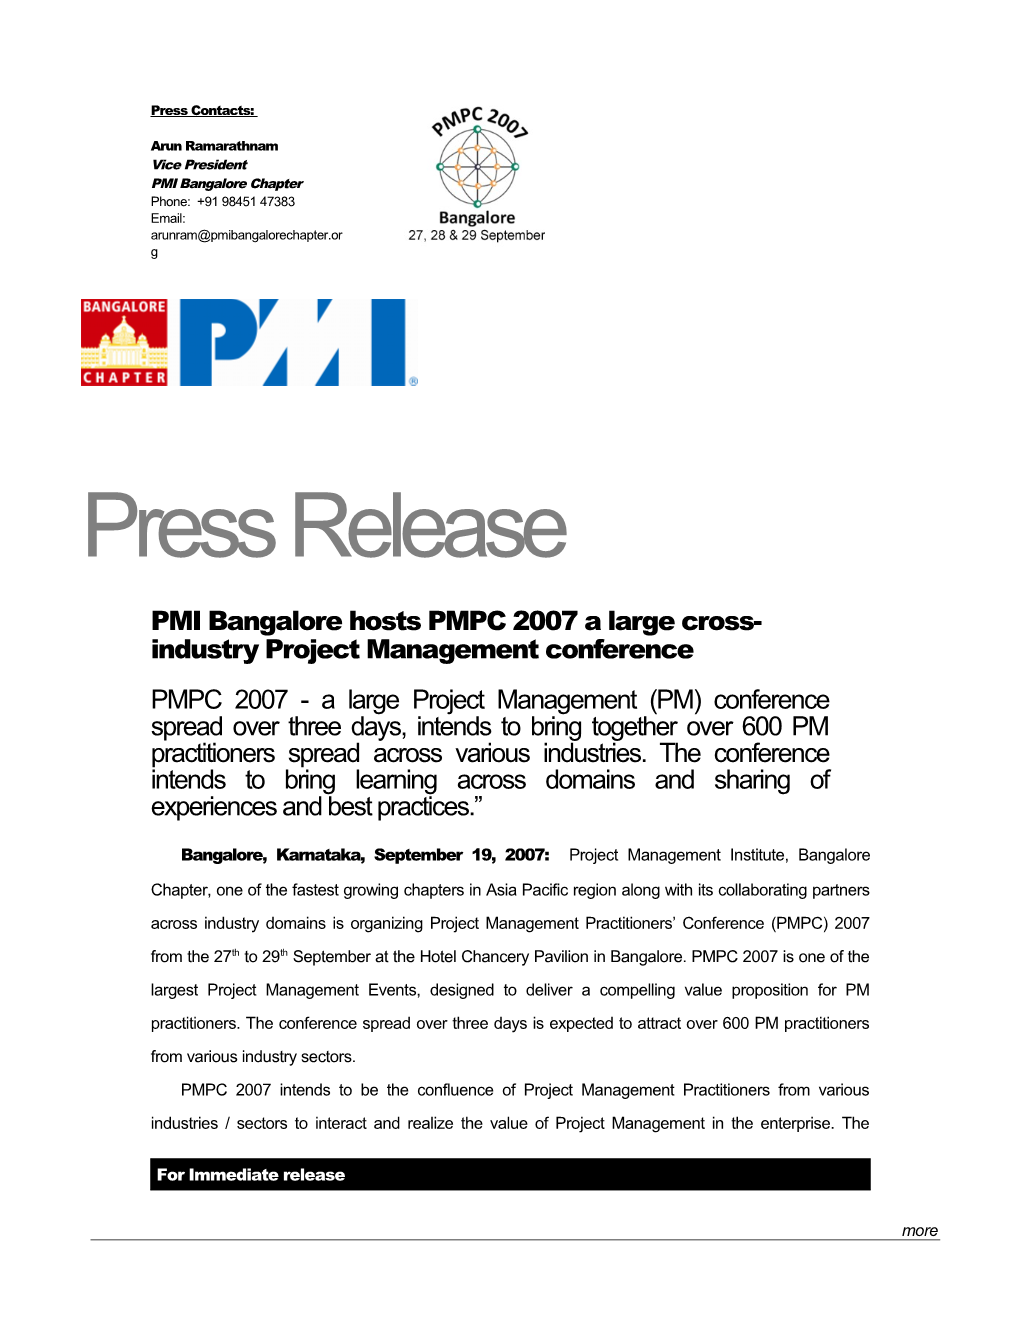 PMPC 2007 Pre Conference Press Release